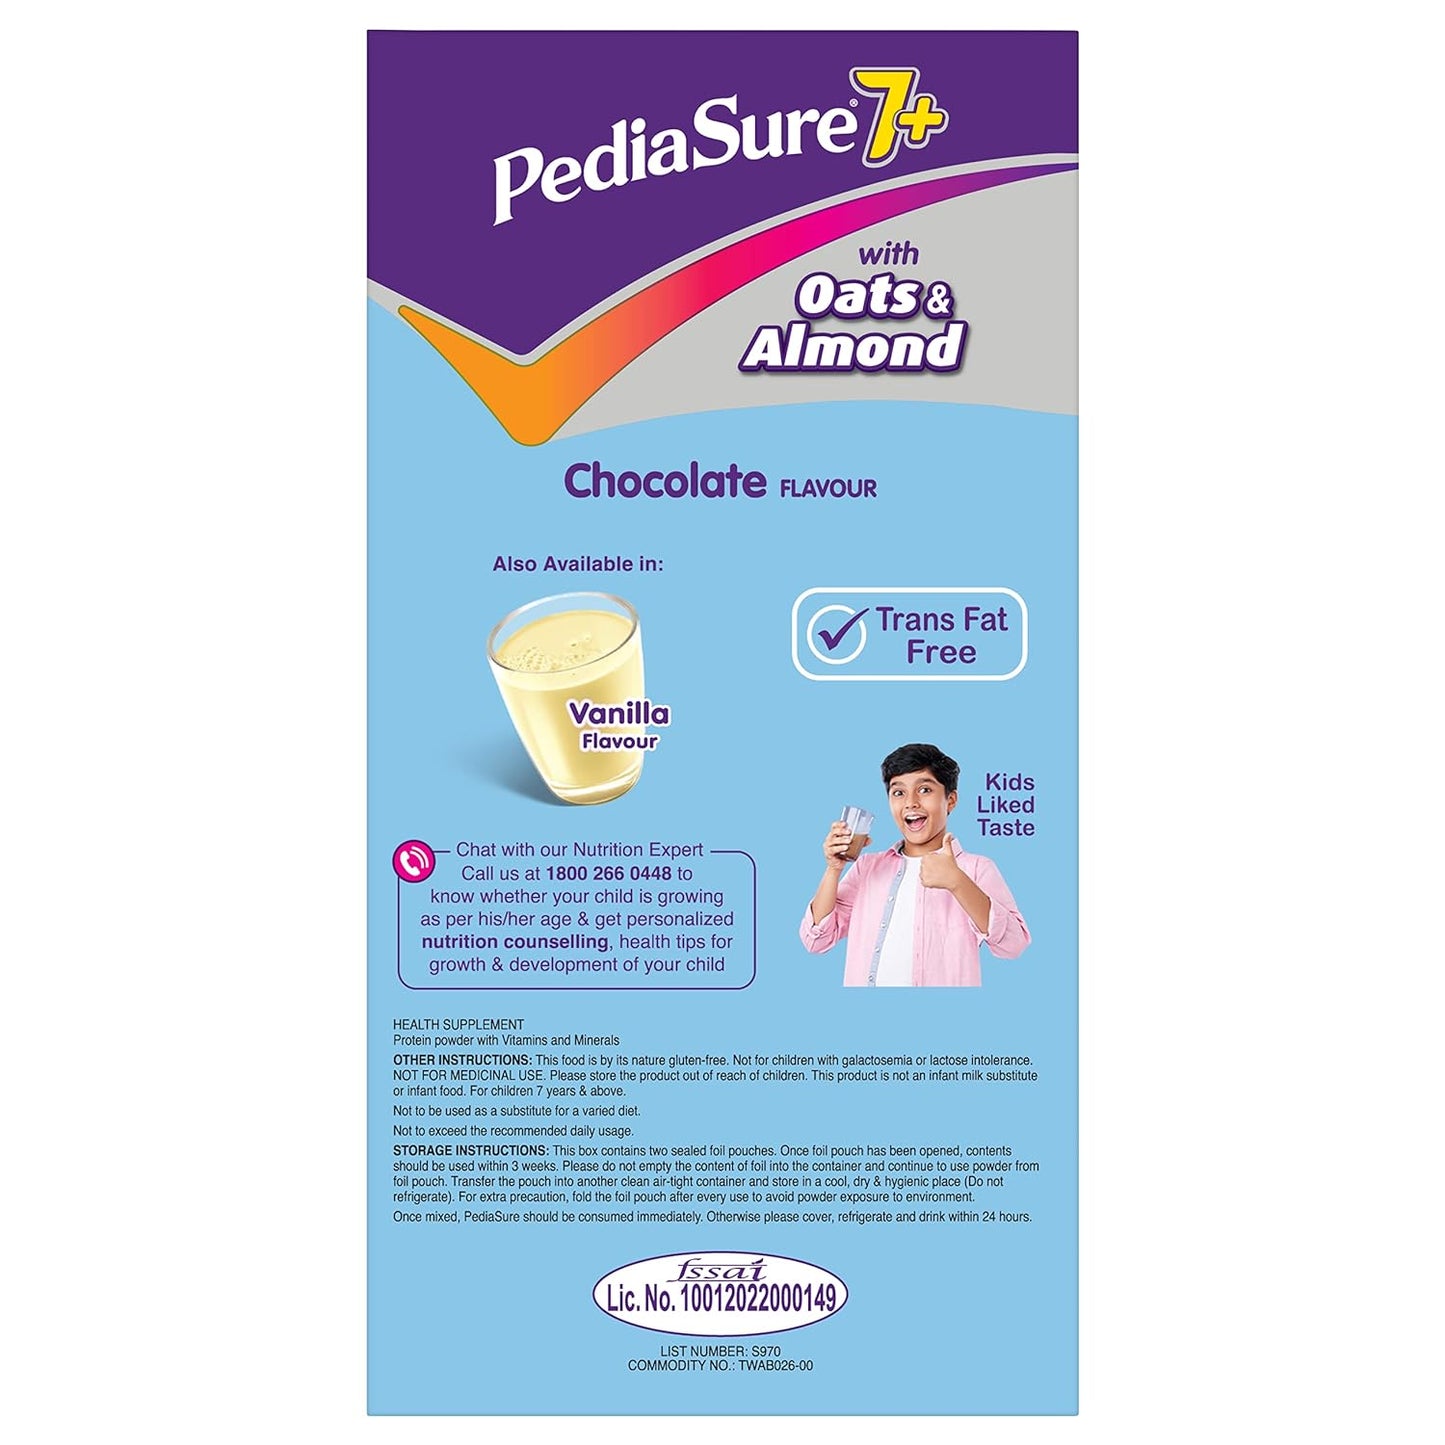 Pediasure 7 Plus Chocolate Flavour Refill, 800gm